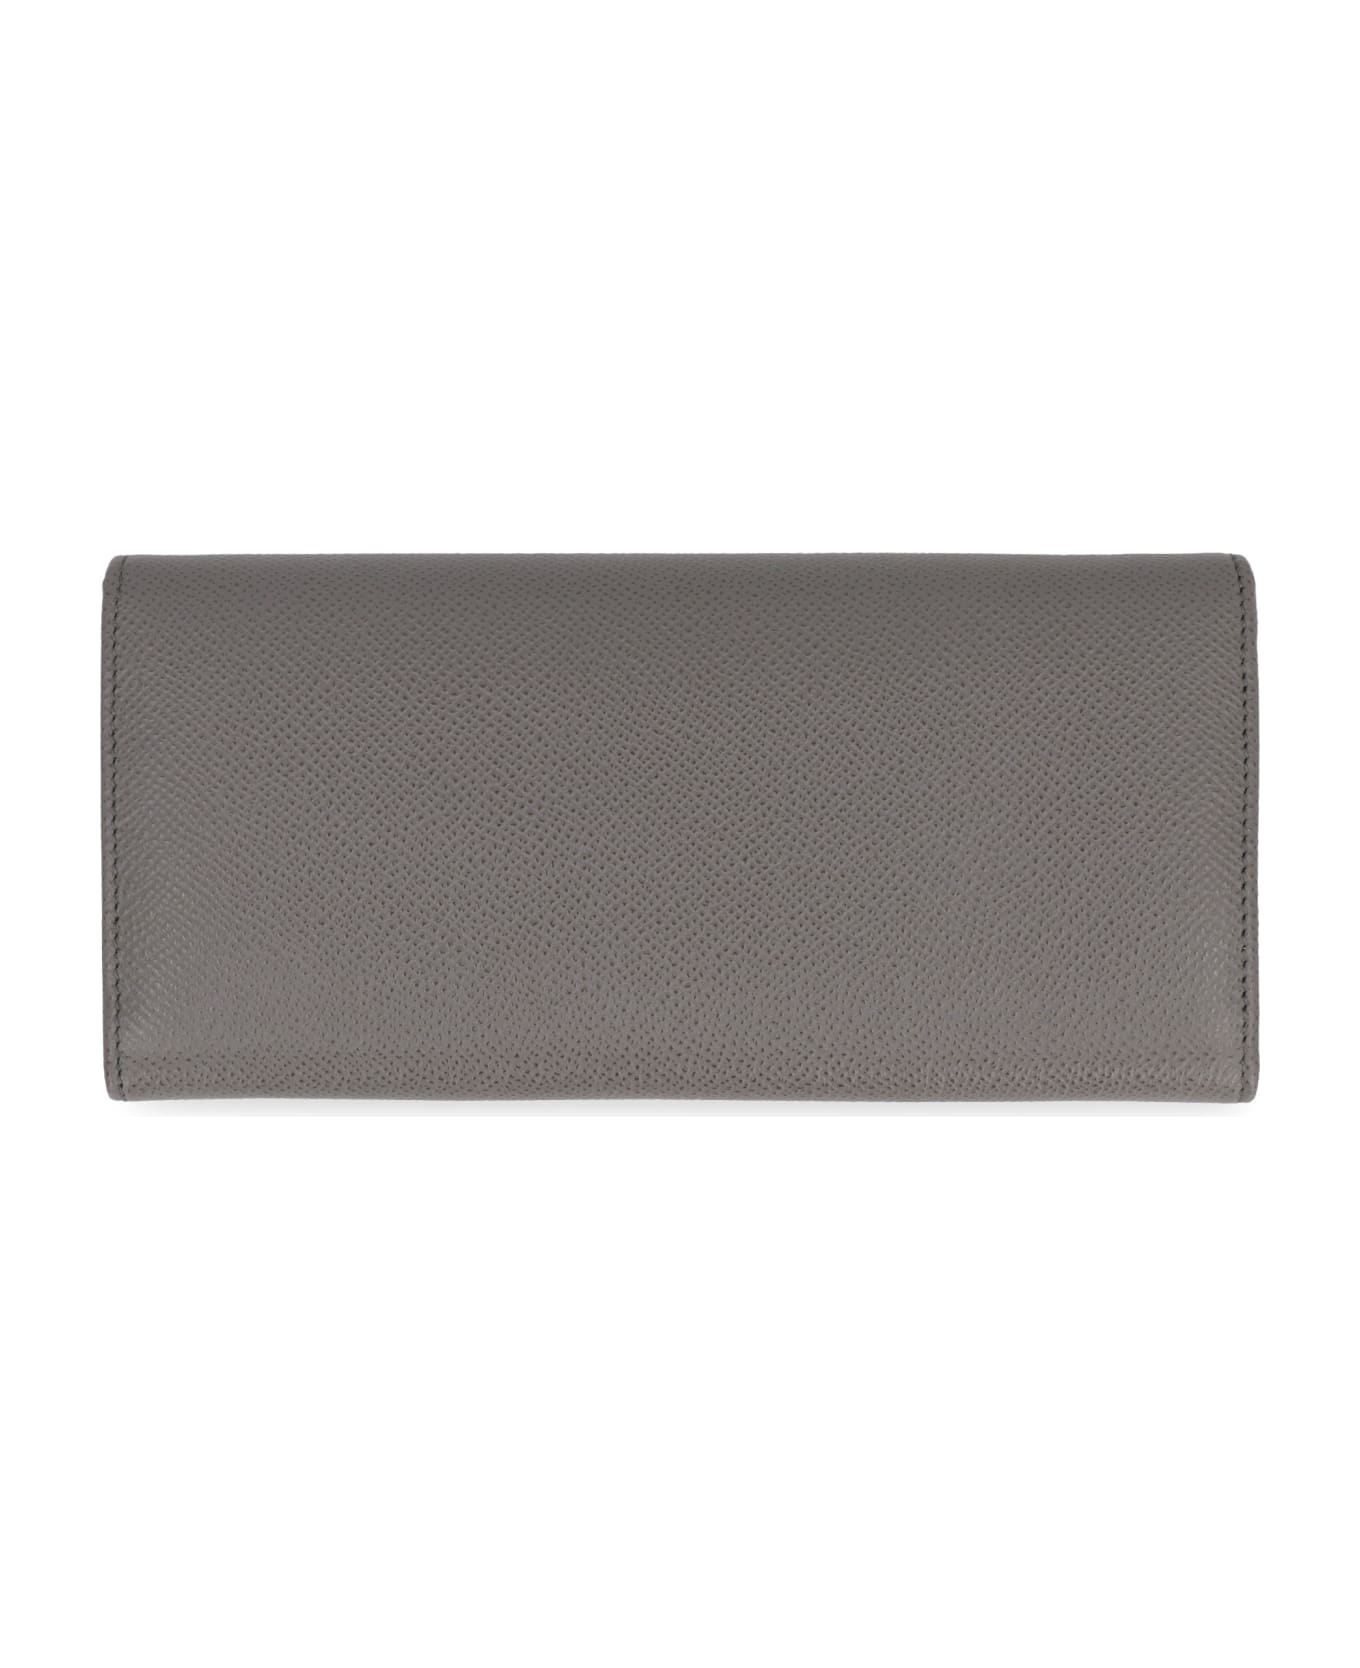 Ferragamo Gancini Leather Wallet - grey 財布